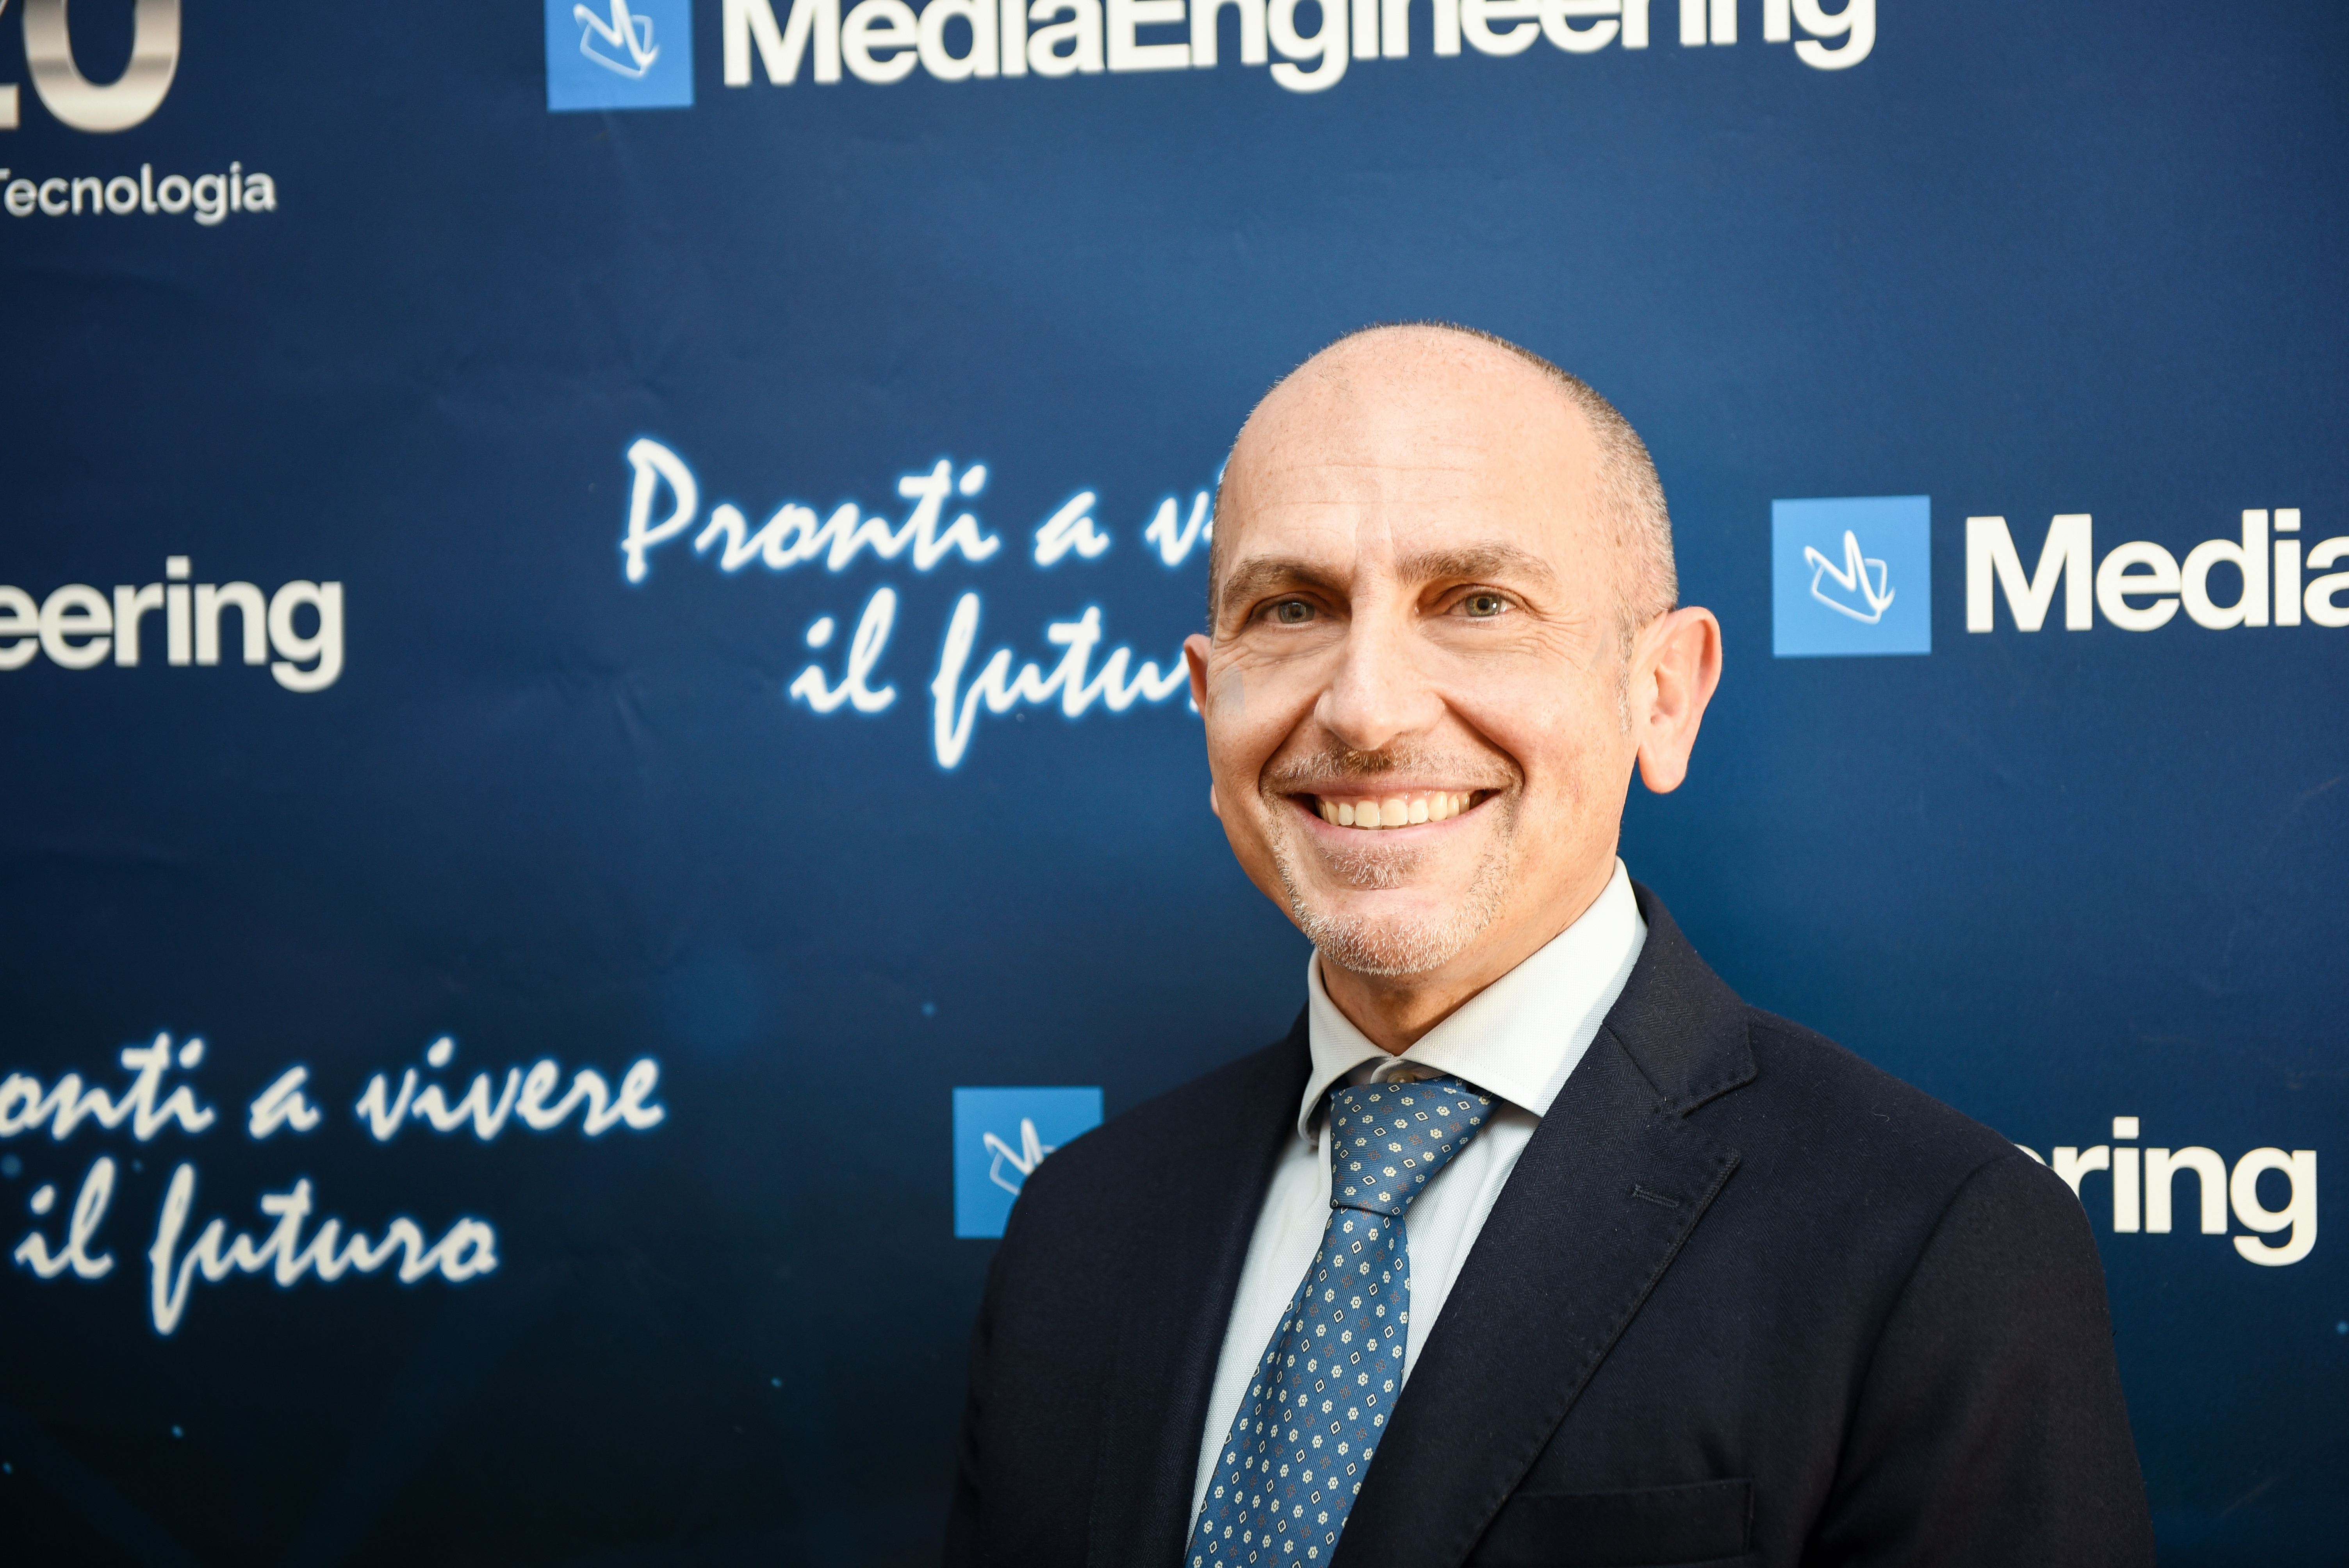 Antonio Franzese (1)": Antonio Franzese, CEO di Media Engineering.